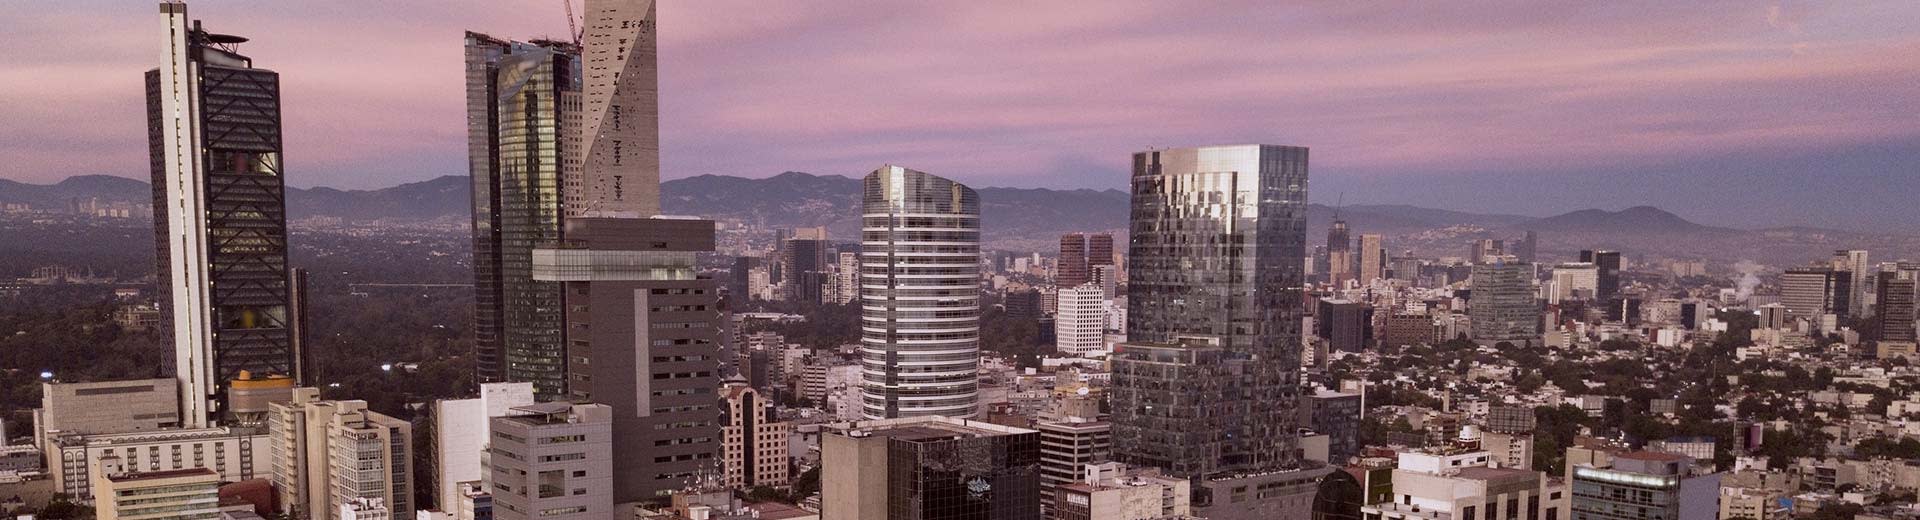 前景是摩天大楼，背后是墨西哥城，背景是黄昏或黎明的紫光。